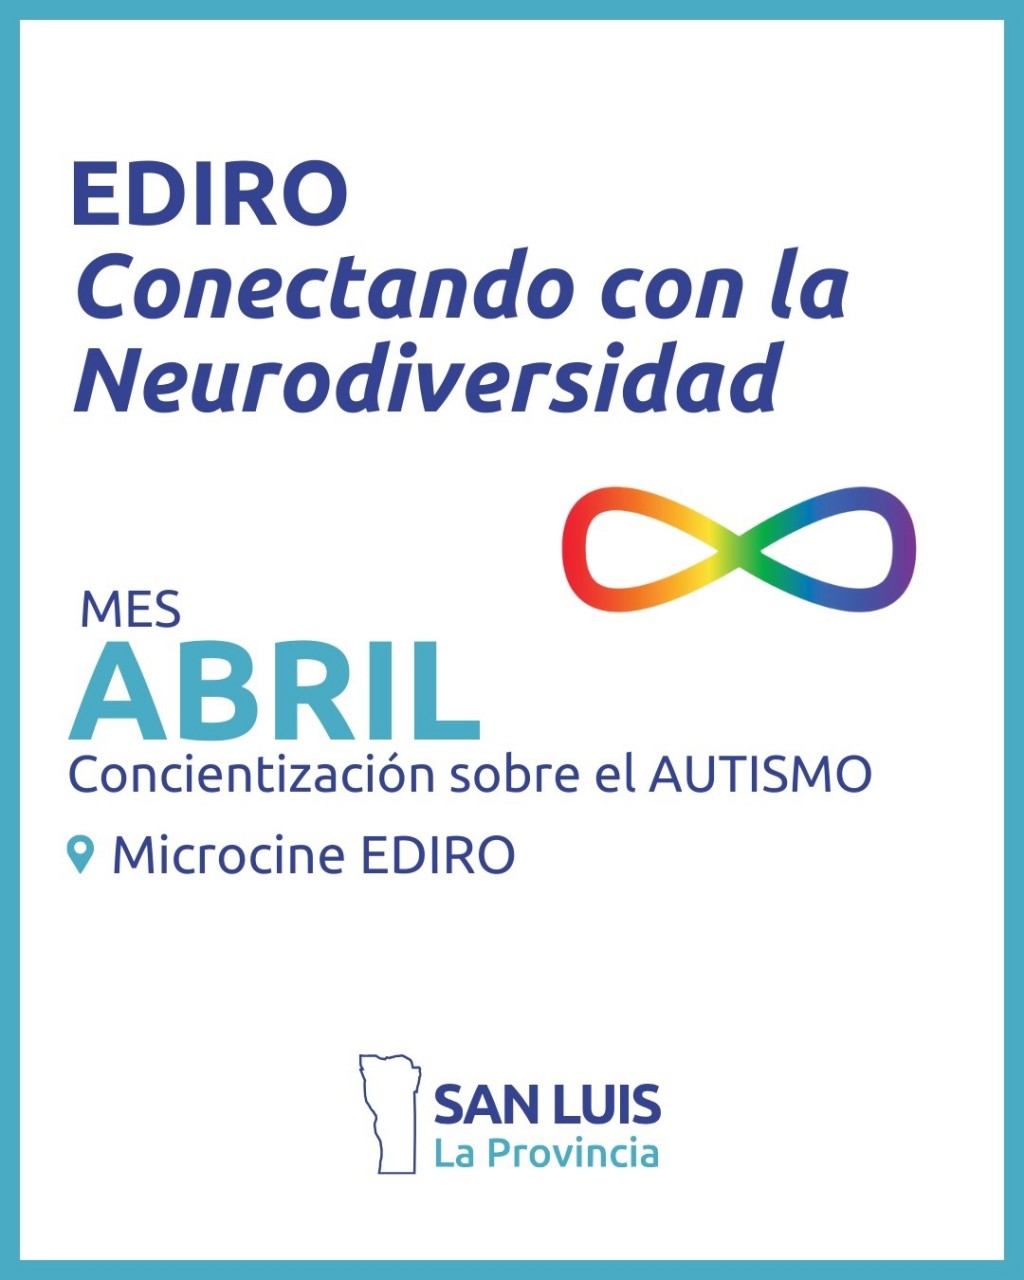 Transformando espacios: EDIRO Conectando con la Neurodiversidad